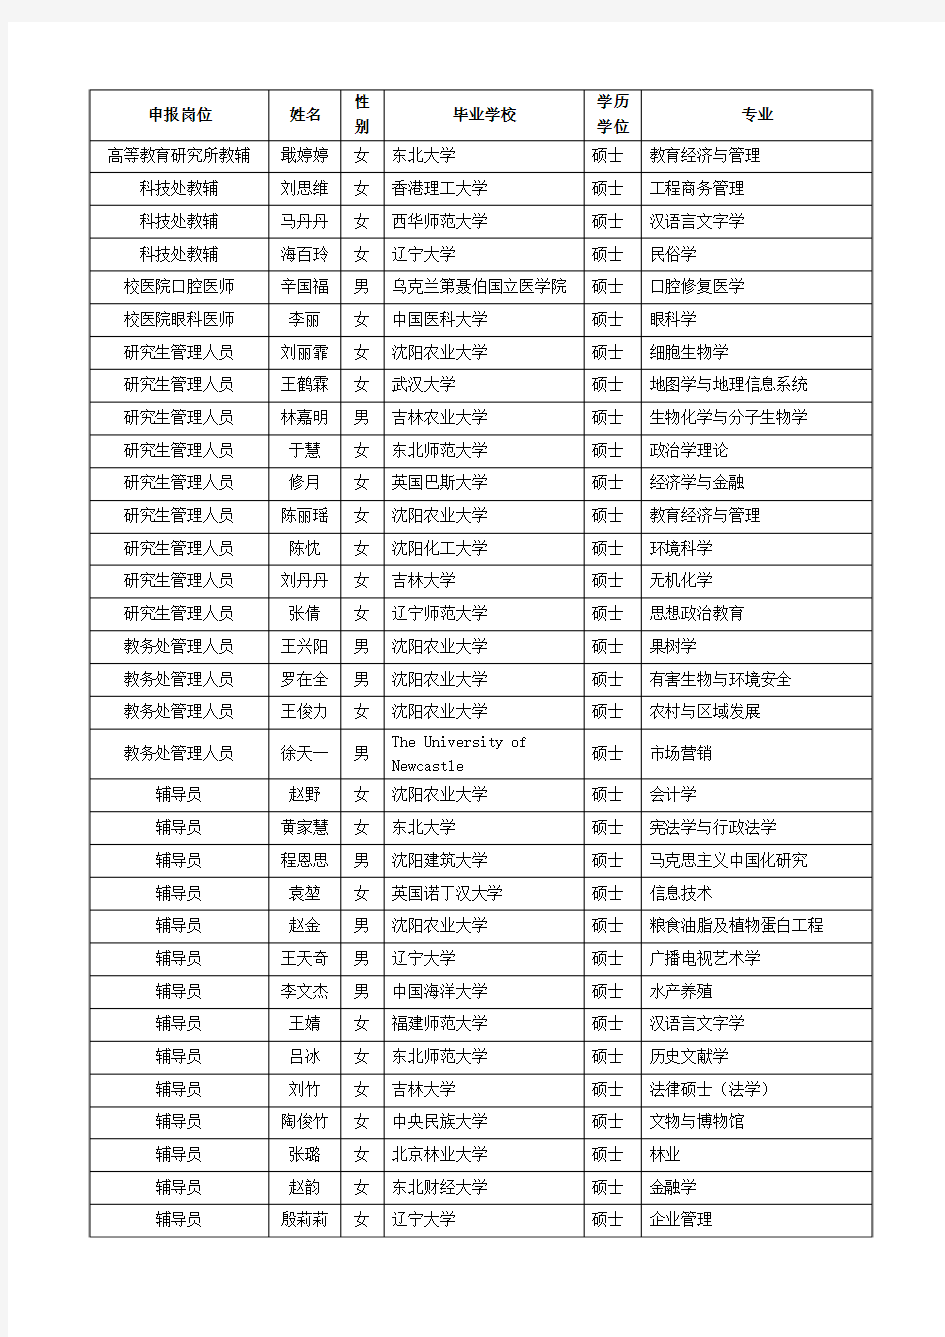 沈阳农业大学2014年公开招聘面试人员名单